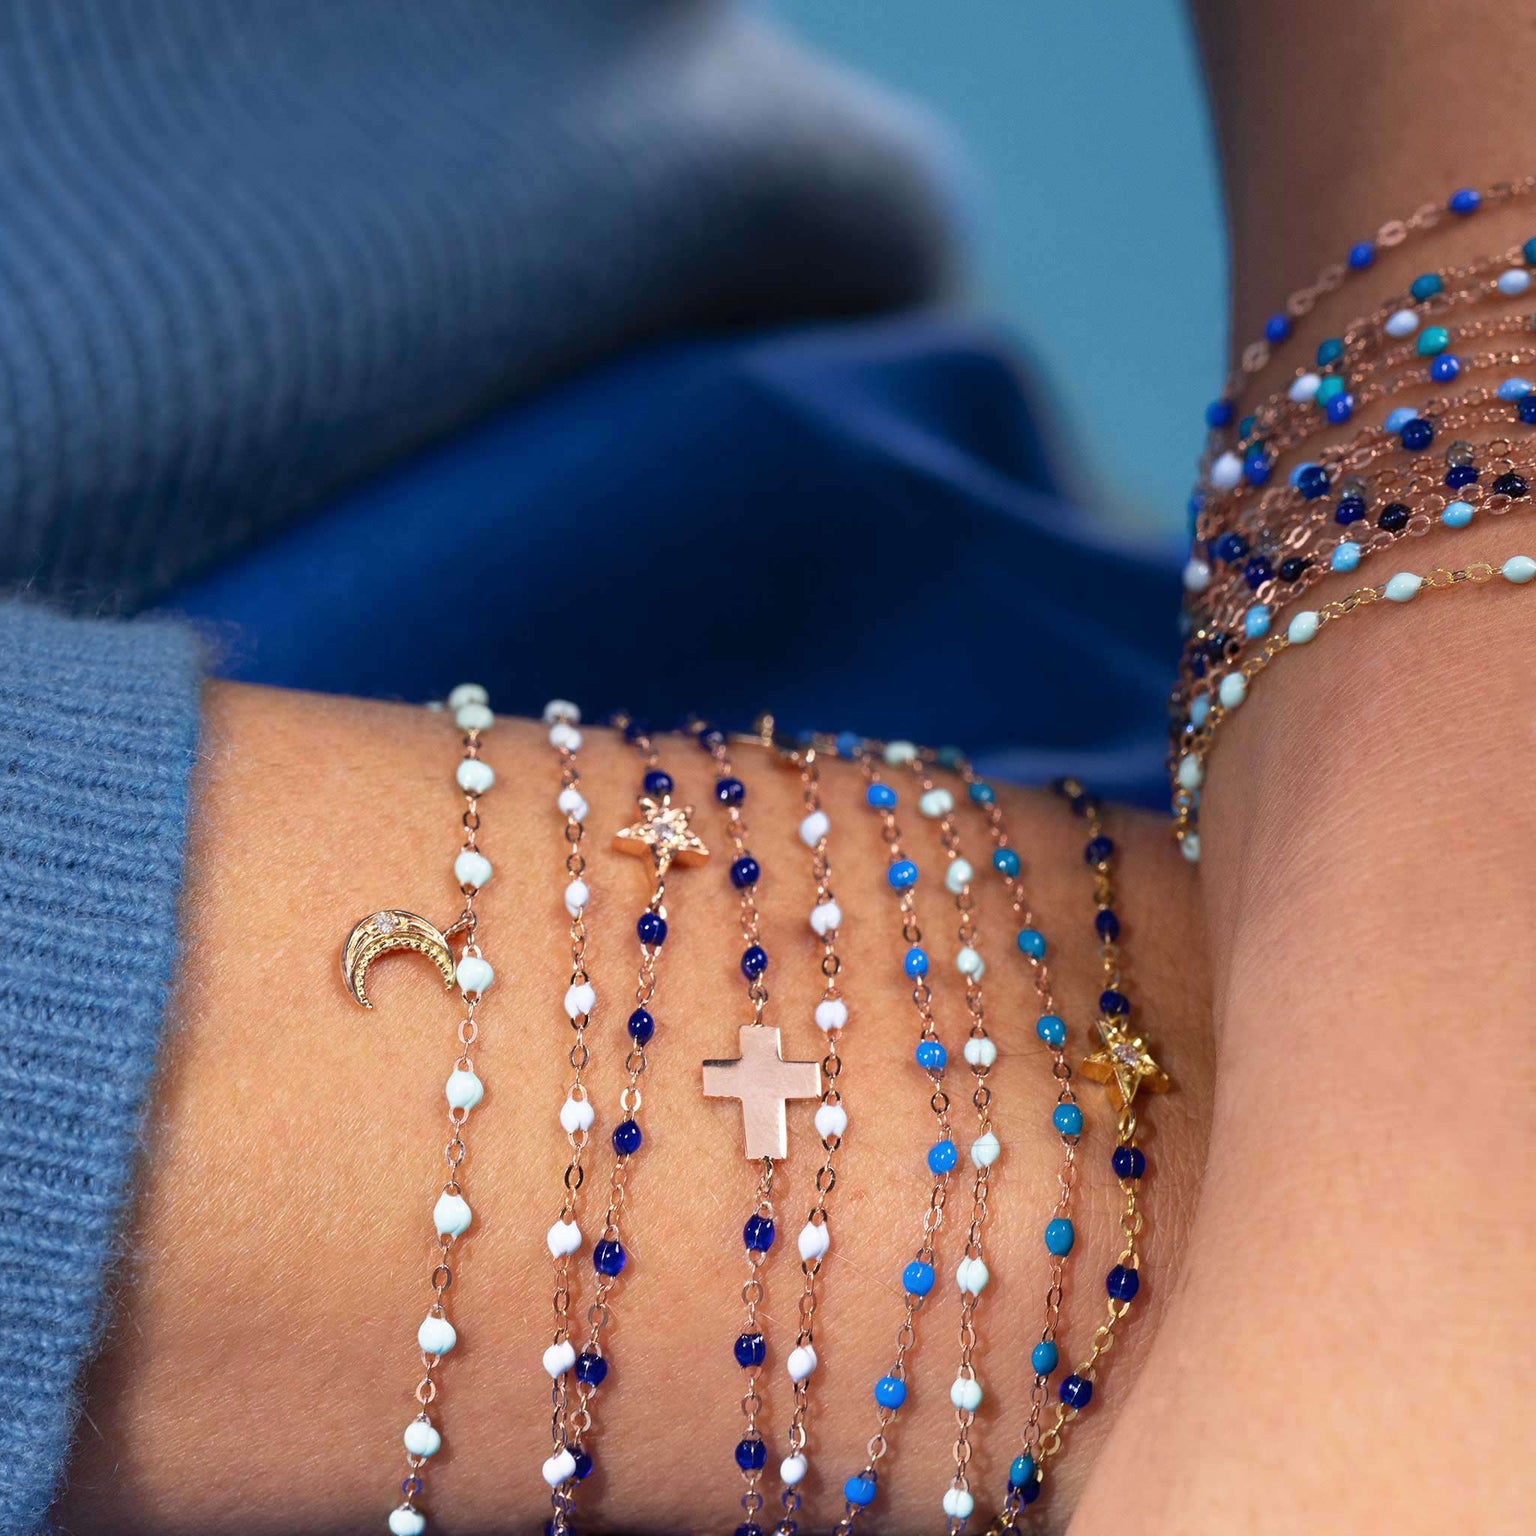 Bracelet bleu layette Classique Gigi, or rose, 17 cm – Gigi